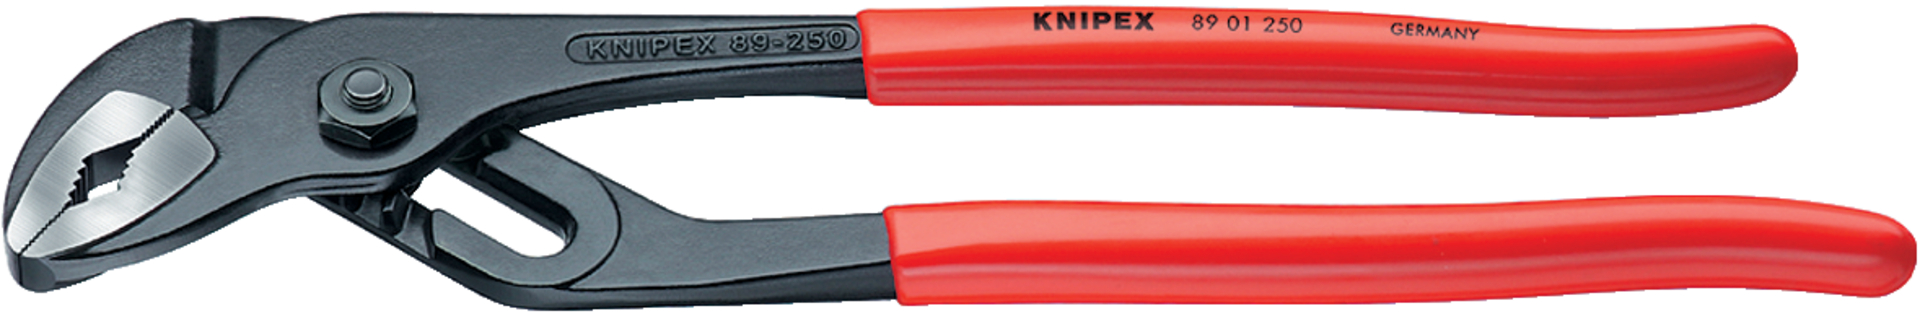 KNIPEX 89 01 250 Wasserpumpenzange mit Rillengelenk schwarz atramentiert 250 mm